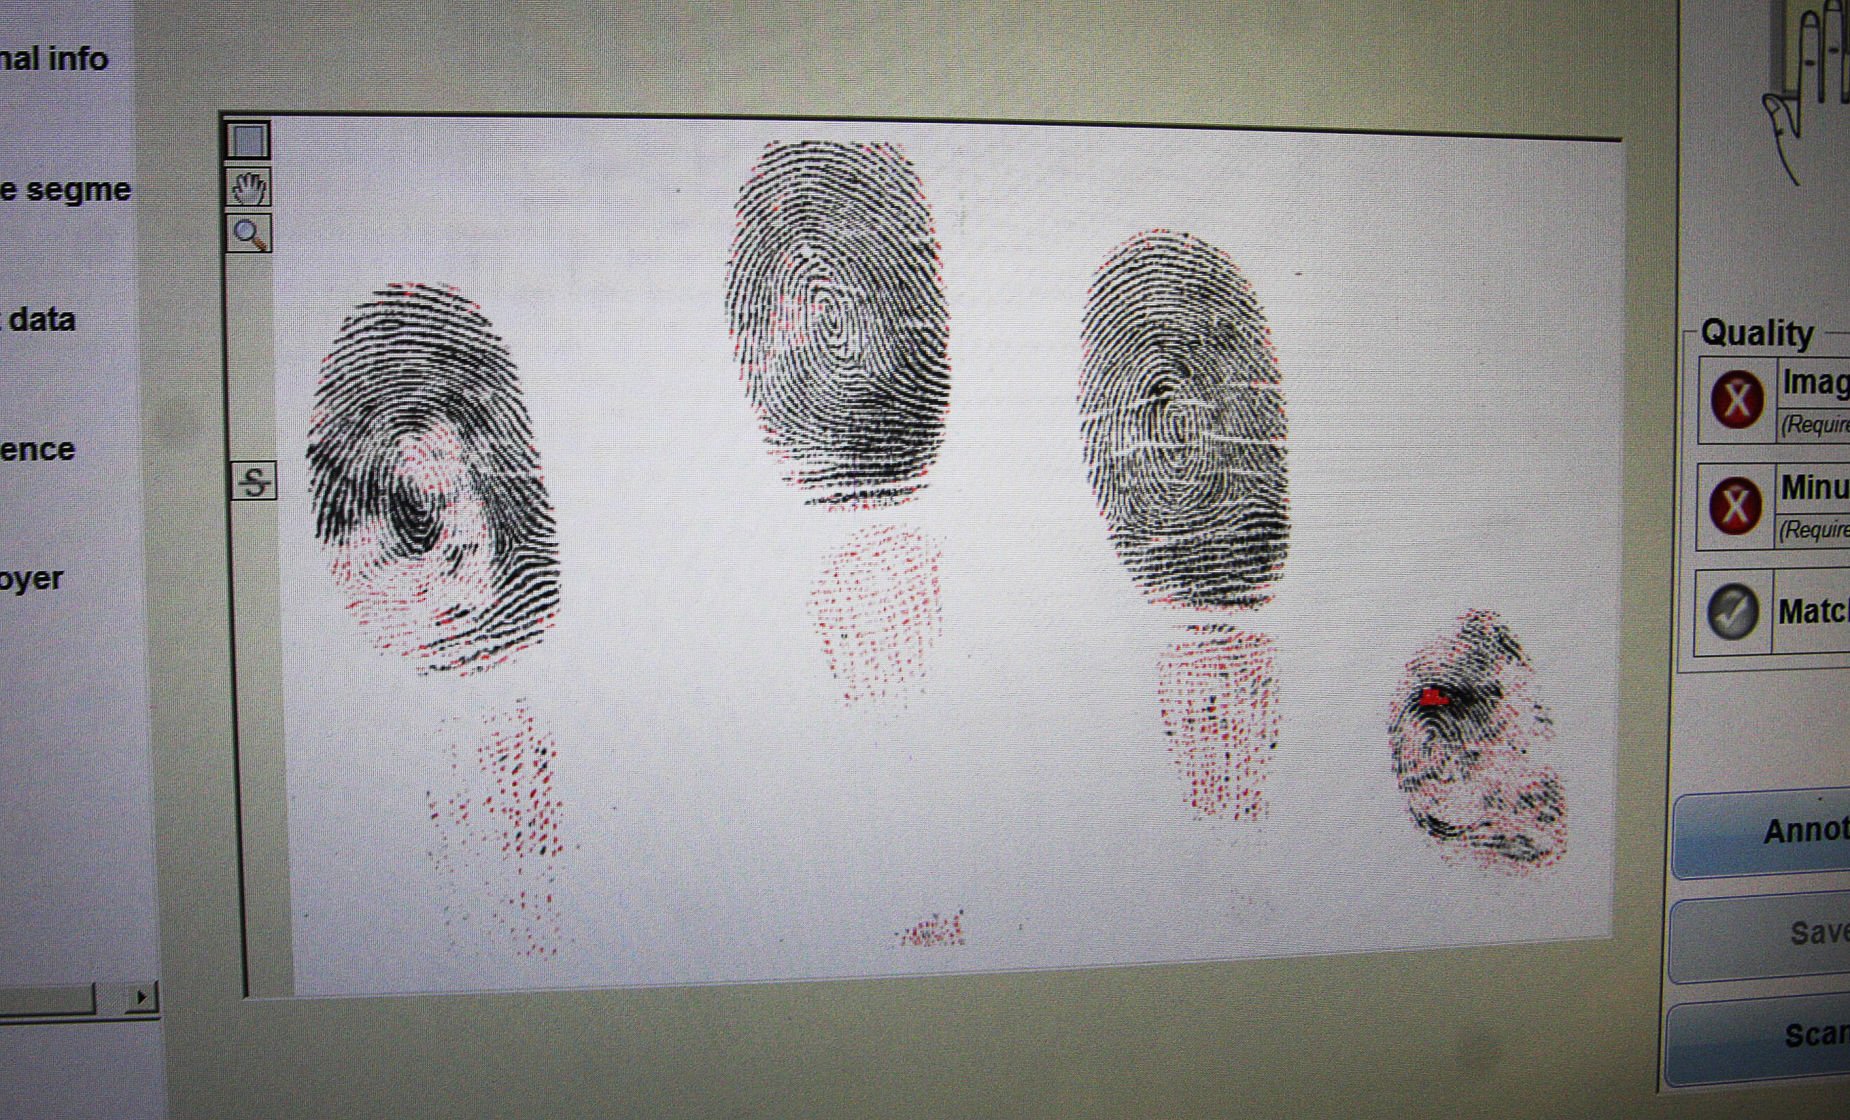 fingerprinting police station near me